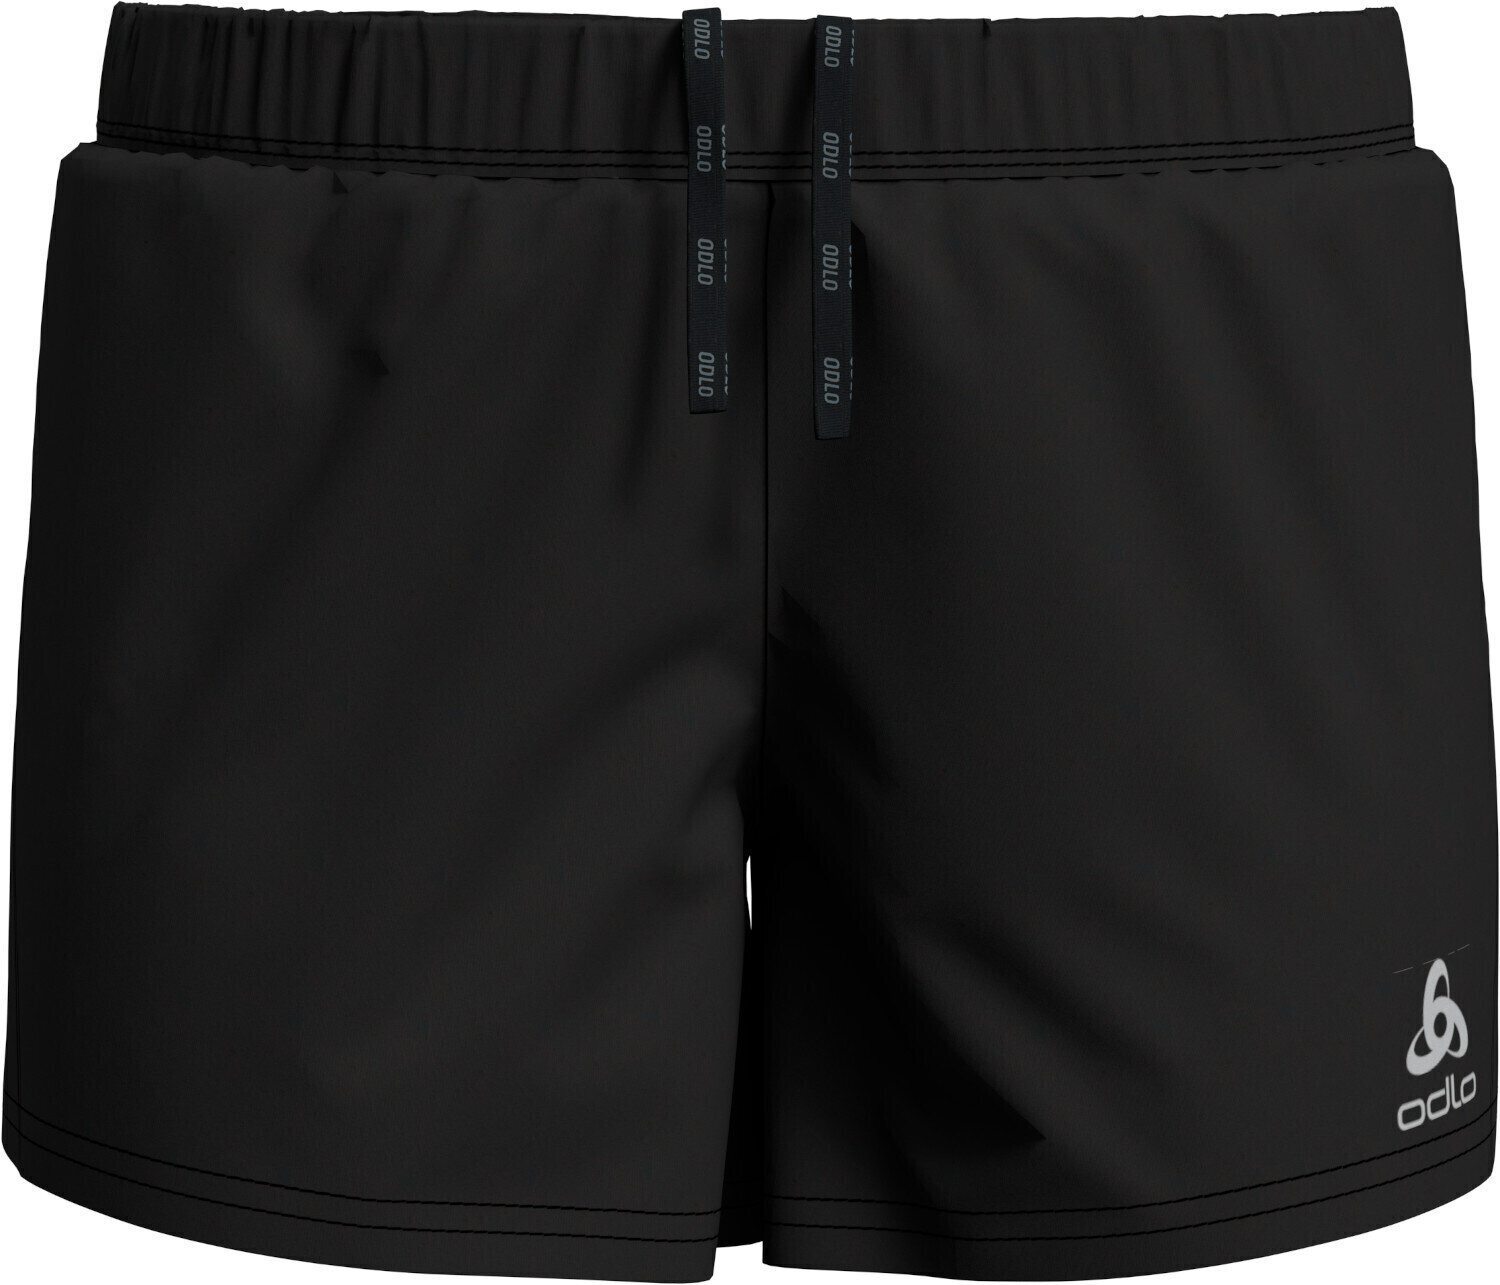 Running shorts
 Odlo Element Shorts Black S Running shorts